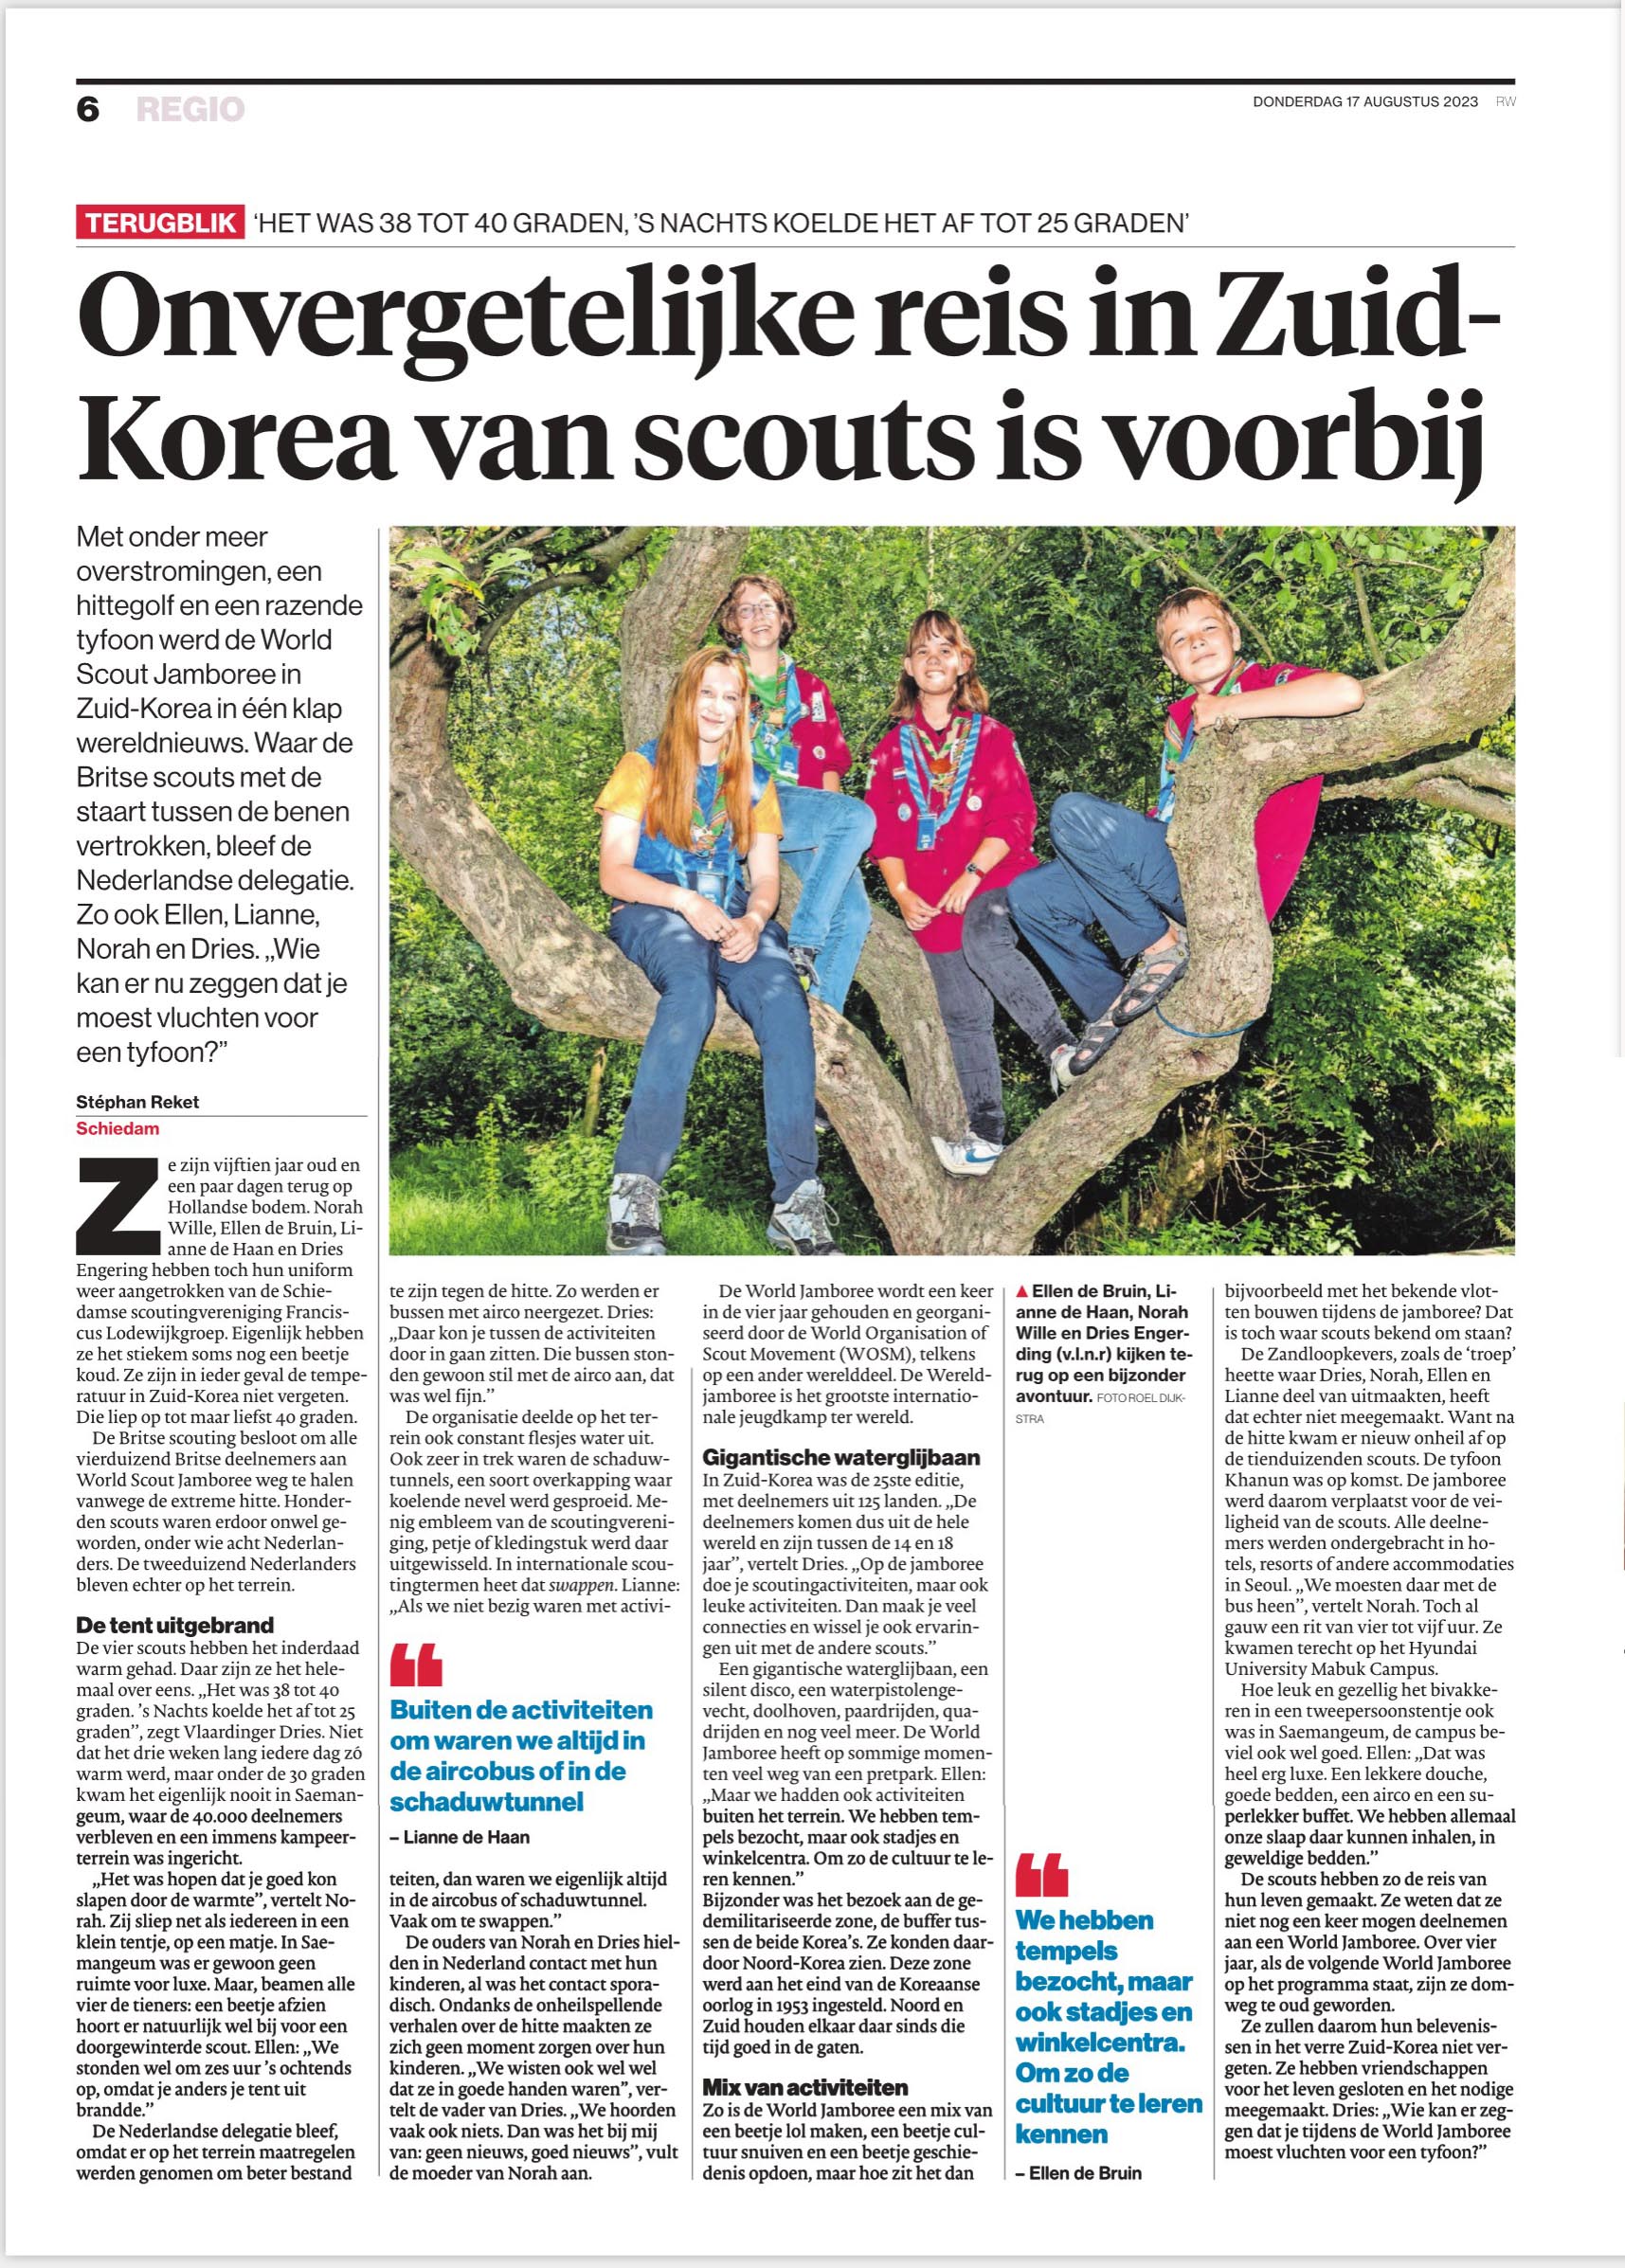 Het Algemeen Dagblad/Rotterdams Dagblad, Schie TV, JW TV en het Nieuwe Stadsblad hielden interviews met de vier Schiedamse deelnemers aan de Wereld Jamboree 2023 in Zuid Korea